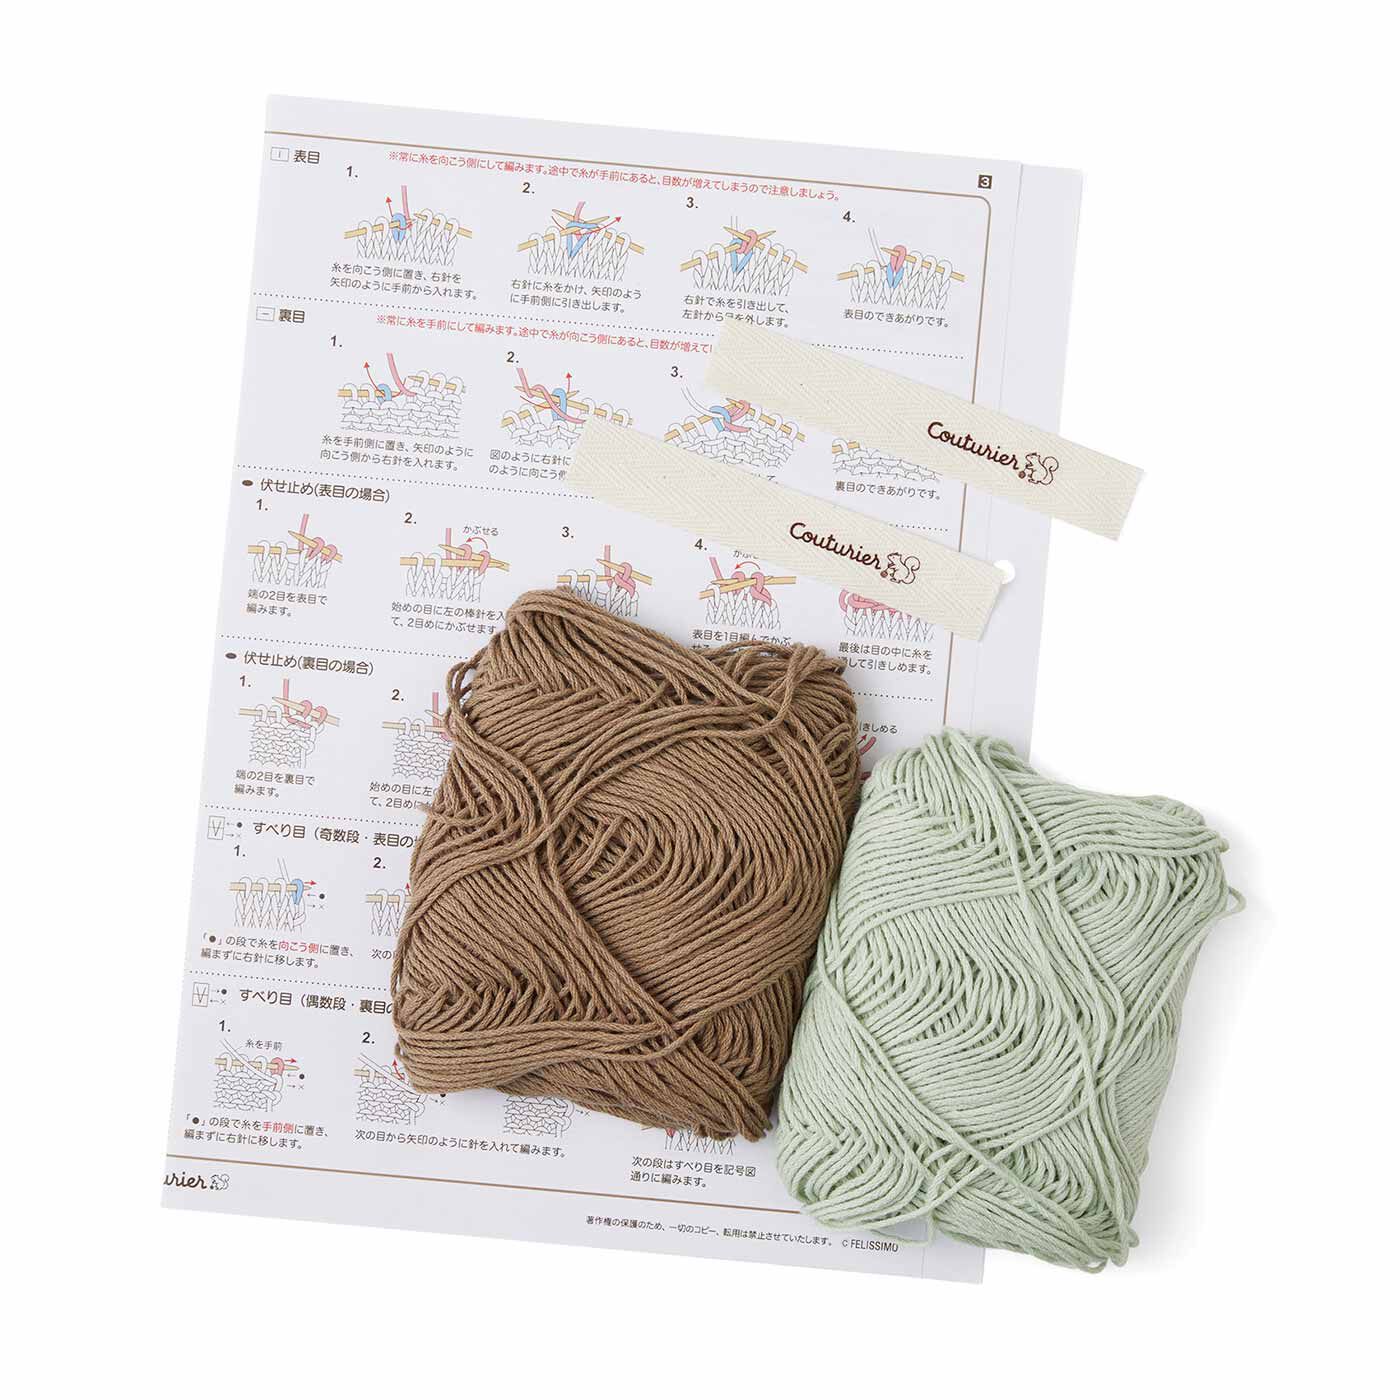 Couturier|気持ちを整えるような日々の習慣 棒針編み タオルのように使えるクロスの会|●1回分のお届けキット例です。　毎回2色の糸がセットで届くので、色違いで2枚のクロスを編めます。